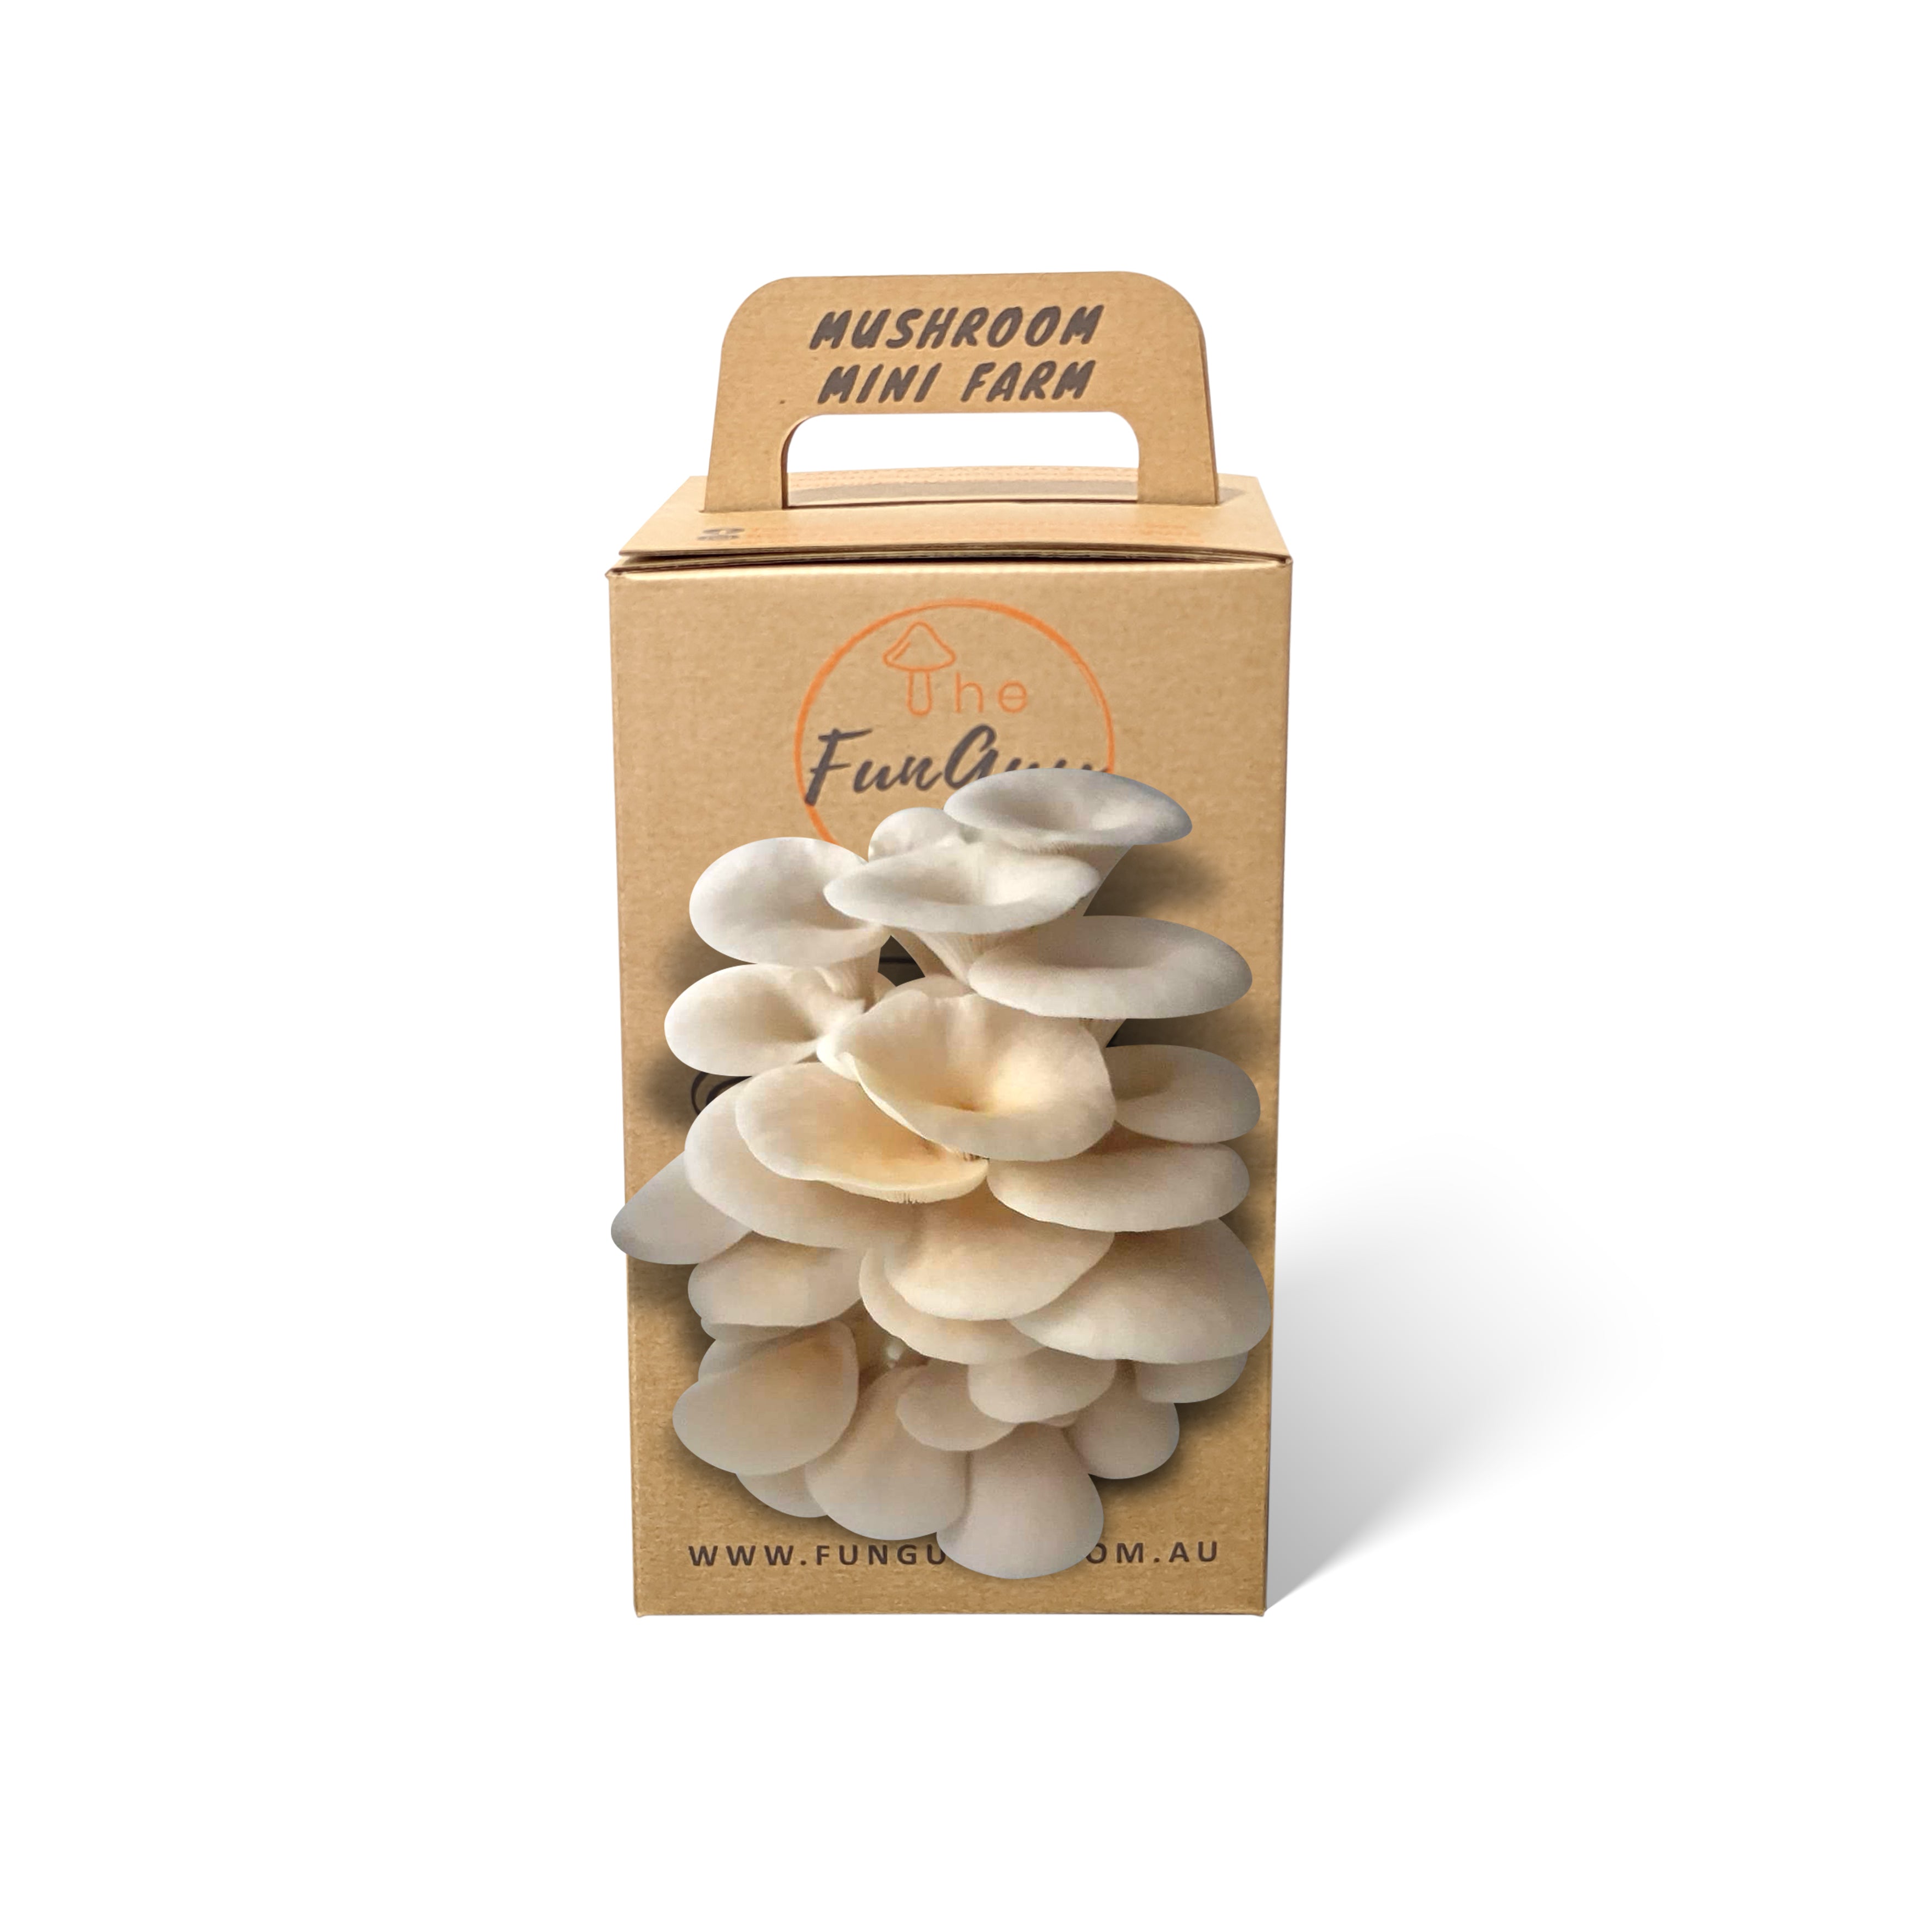 Elm Oyster Mushroom Grow Kit